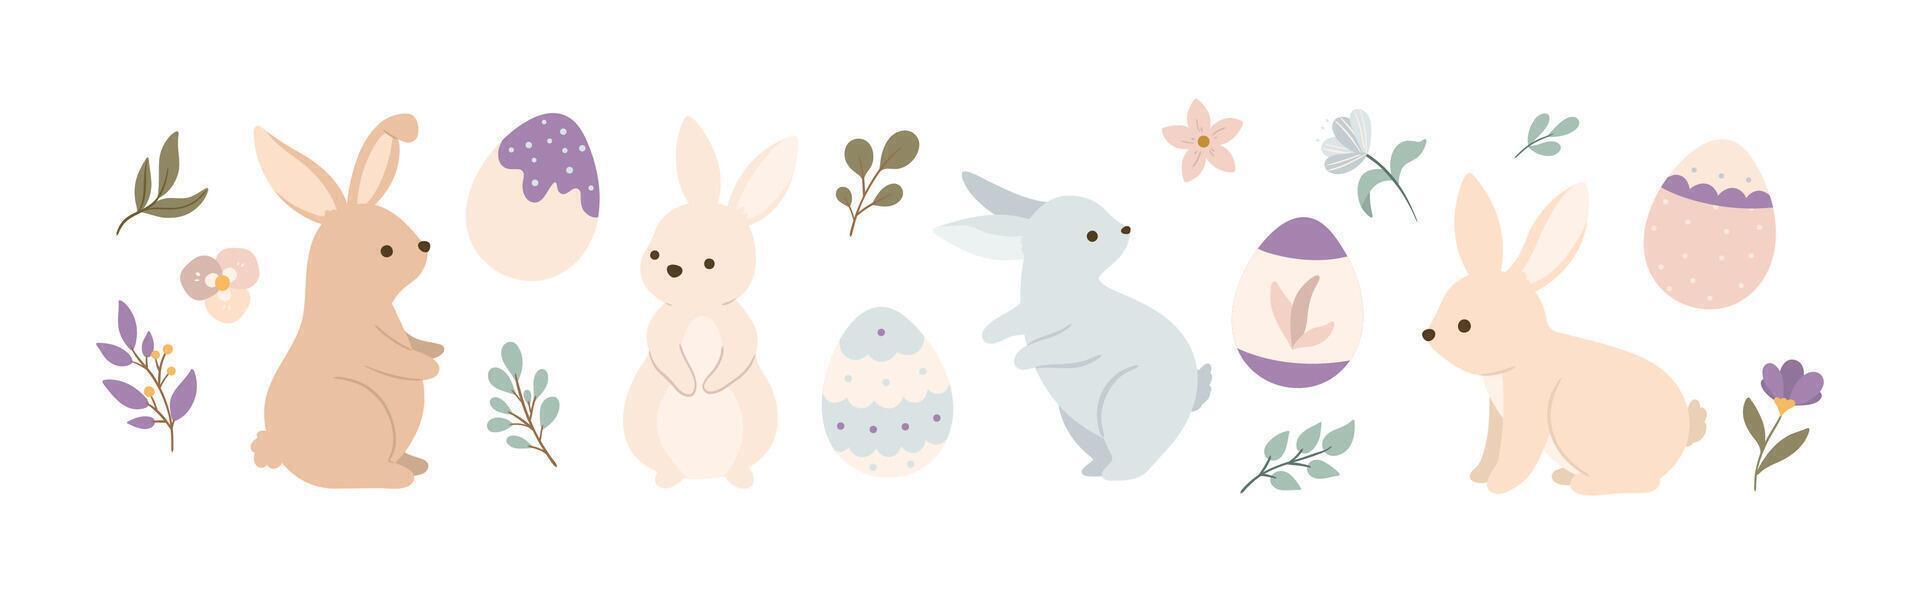 Pascua de Resurrección conejitos en diferente poses con huevos y flores vector